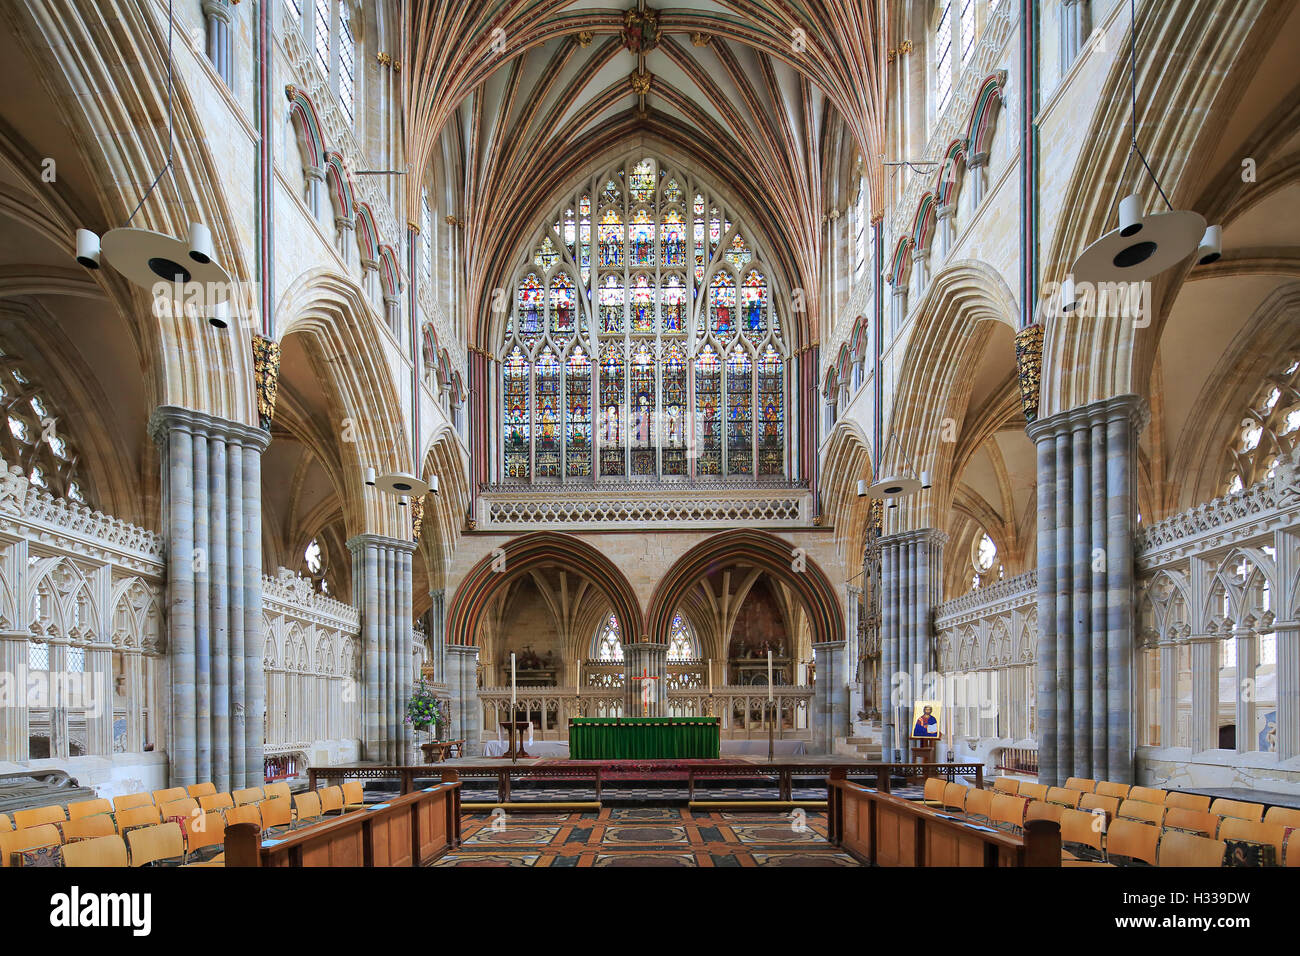 Coro, Iglesia Catedral de San Pedro en Exeter, Exeter, Devon, Inglaterra, Reino Unido Foto de stock